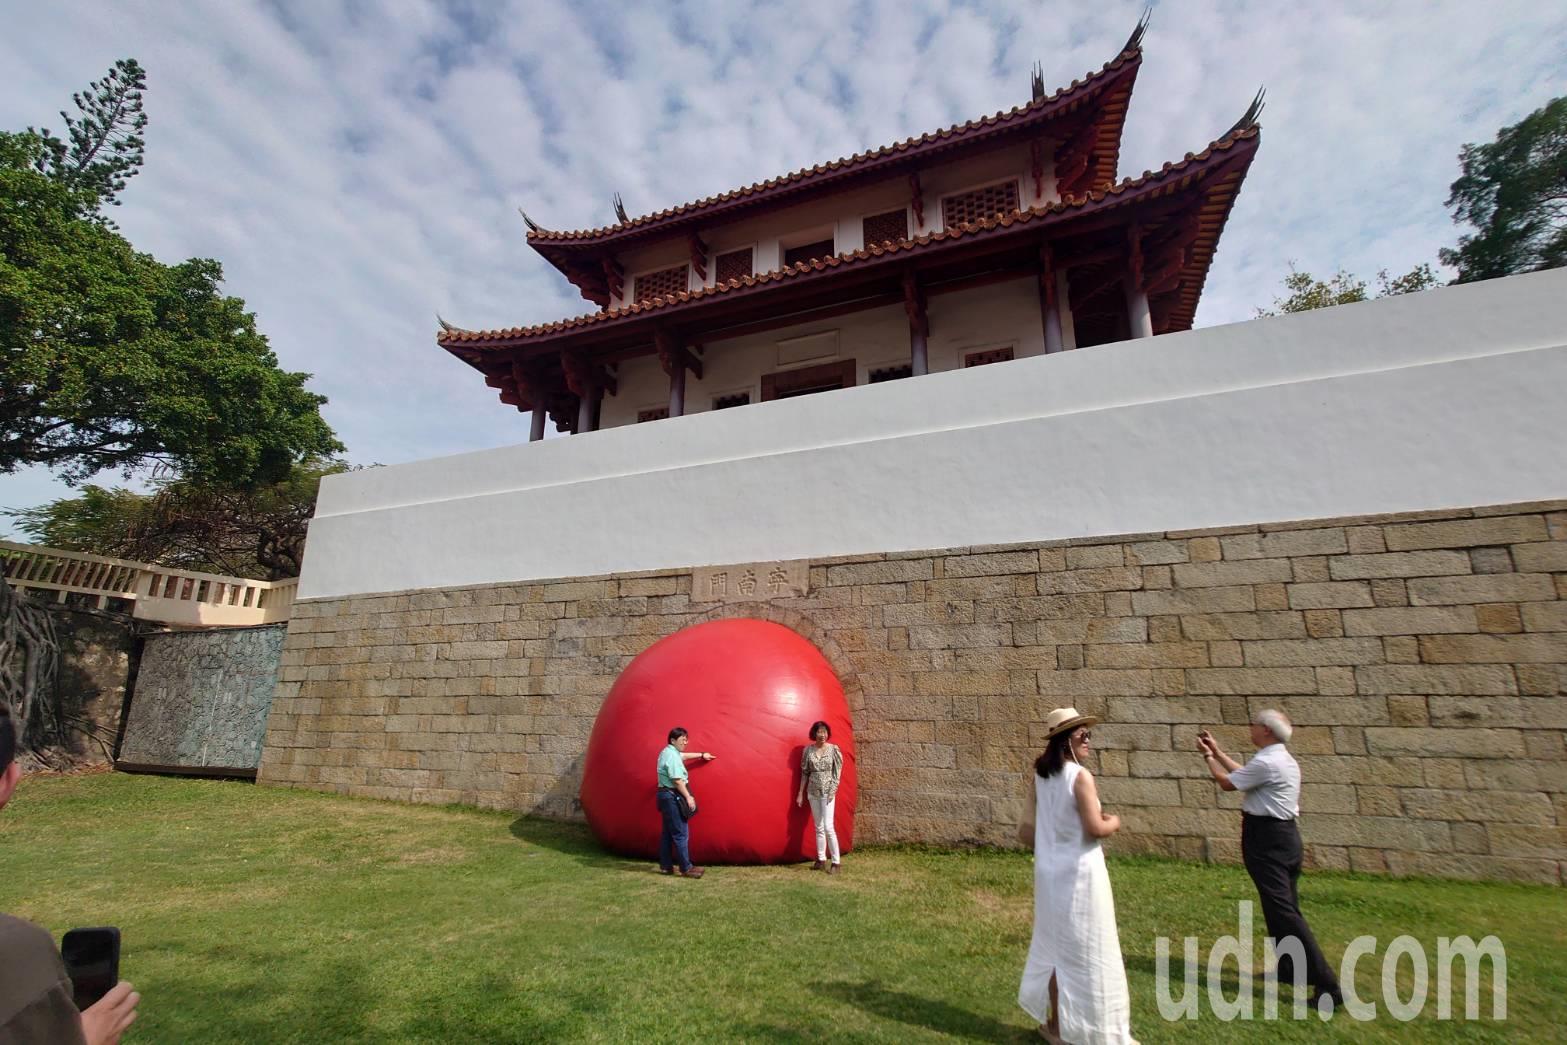 台南市红球计划最后一天来到大南门城，古迹前的大红球显得特别美丽。记者郑惠仁／摄影